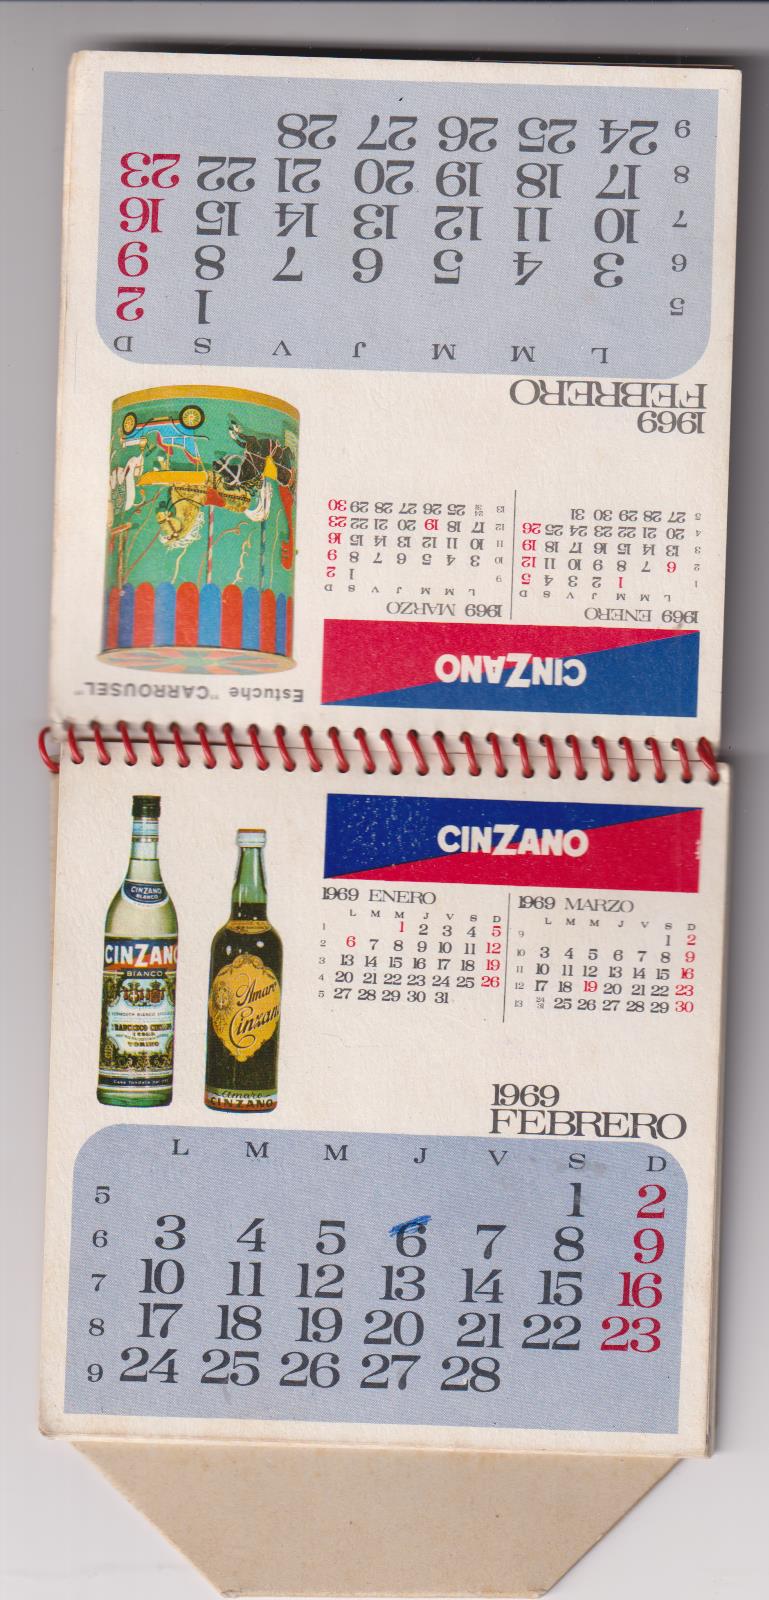 Almanaque-Calendario de mesa. Publicidad de Cinzano 1969 (14,5x11,5) 12 páginas + tapas